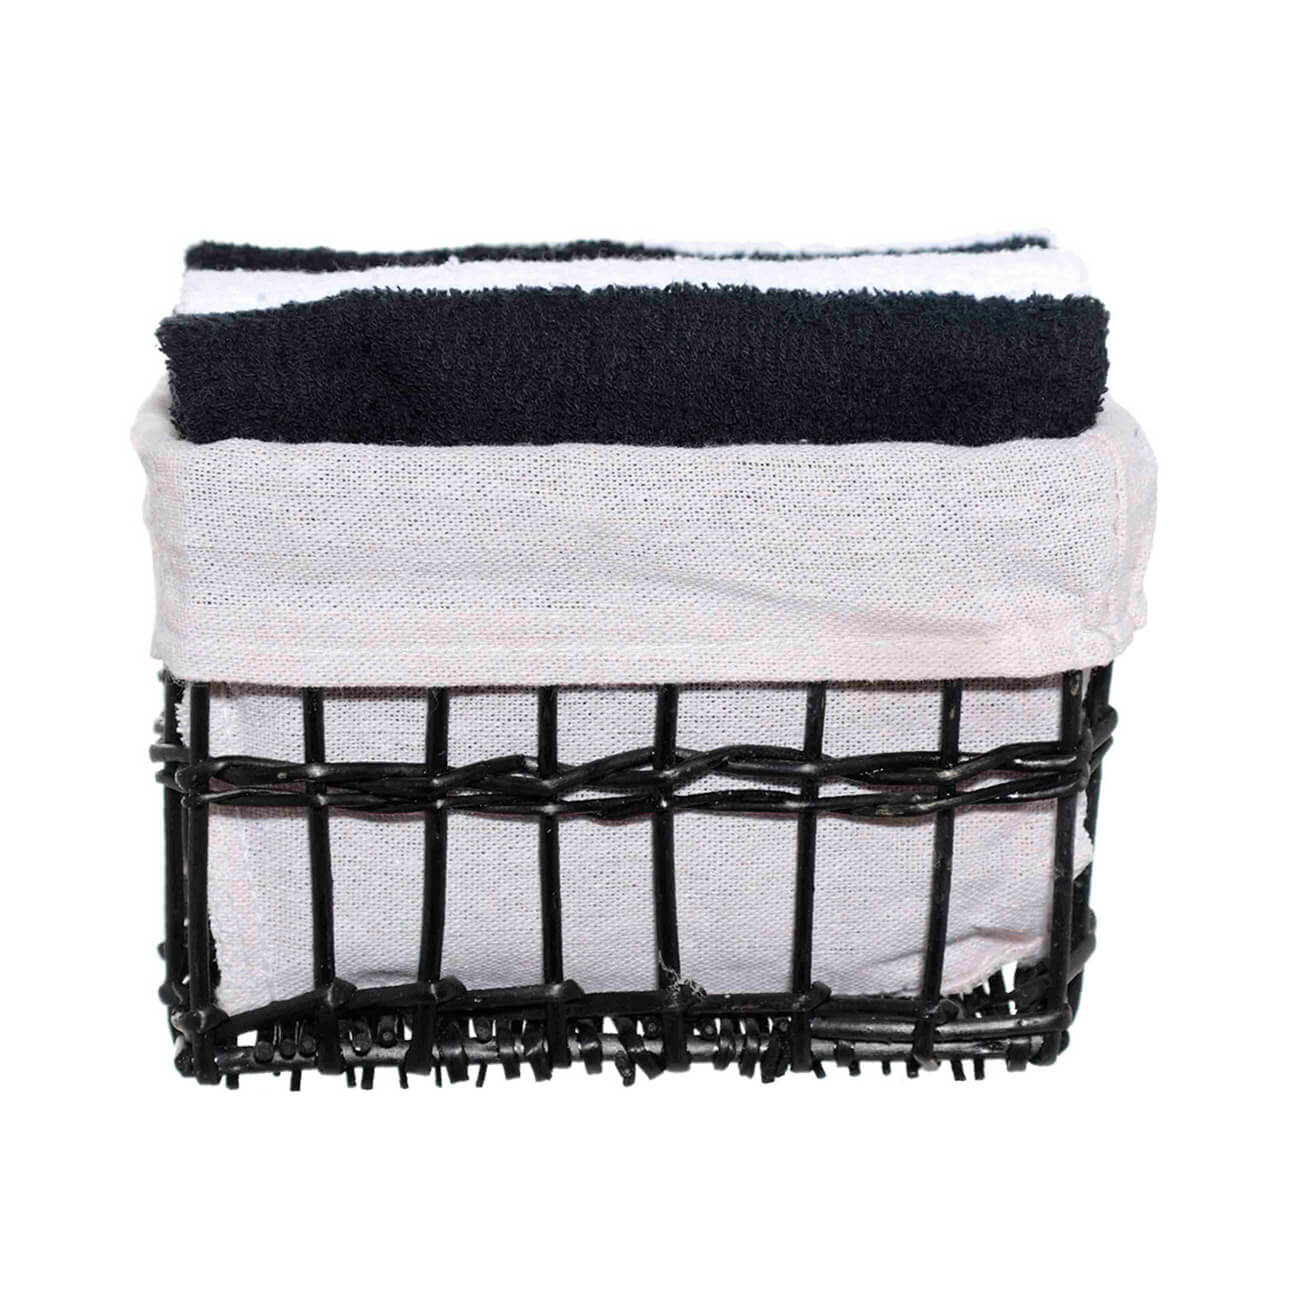 Полотенце, 30х30 см, 4 шт, в корзине, хлопок/лоза, черное/белое, Basket towel красное и черное красное и белое пармская обитель стендаль